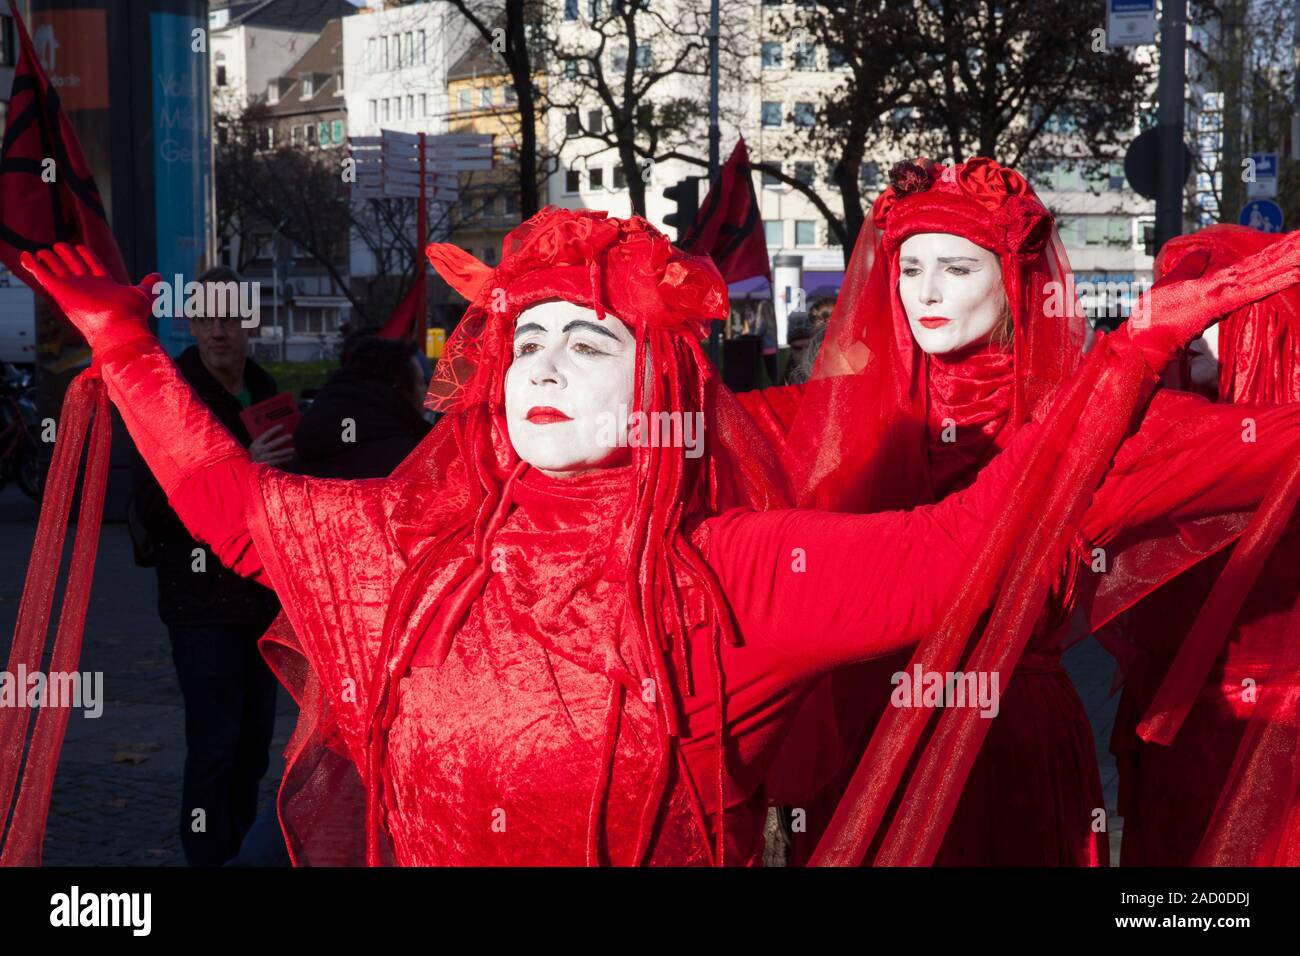 29 novembre, 2019 - Cologne, Allemagne. Le groupe de rebelles performance rouge Extinction rébellion à la grève vendredi pour le climat futur. 4e da Banque D'Images